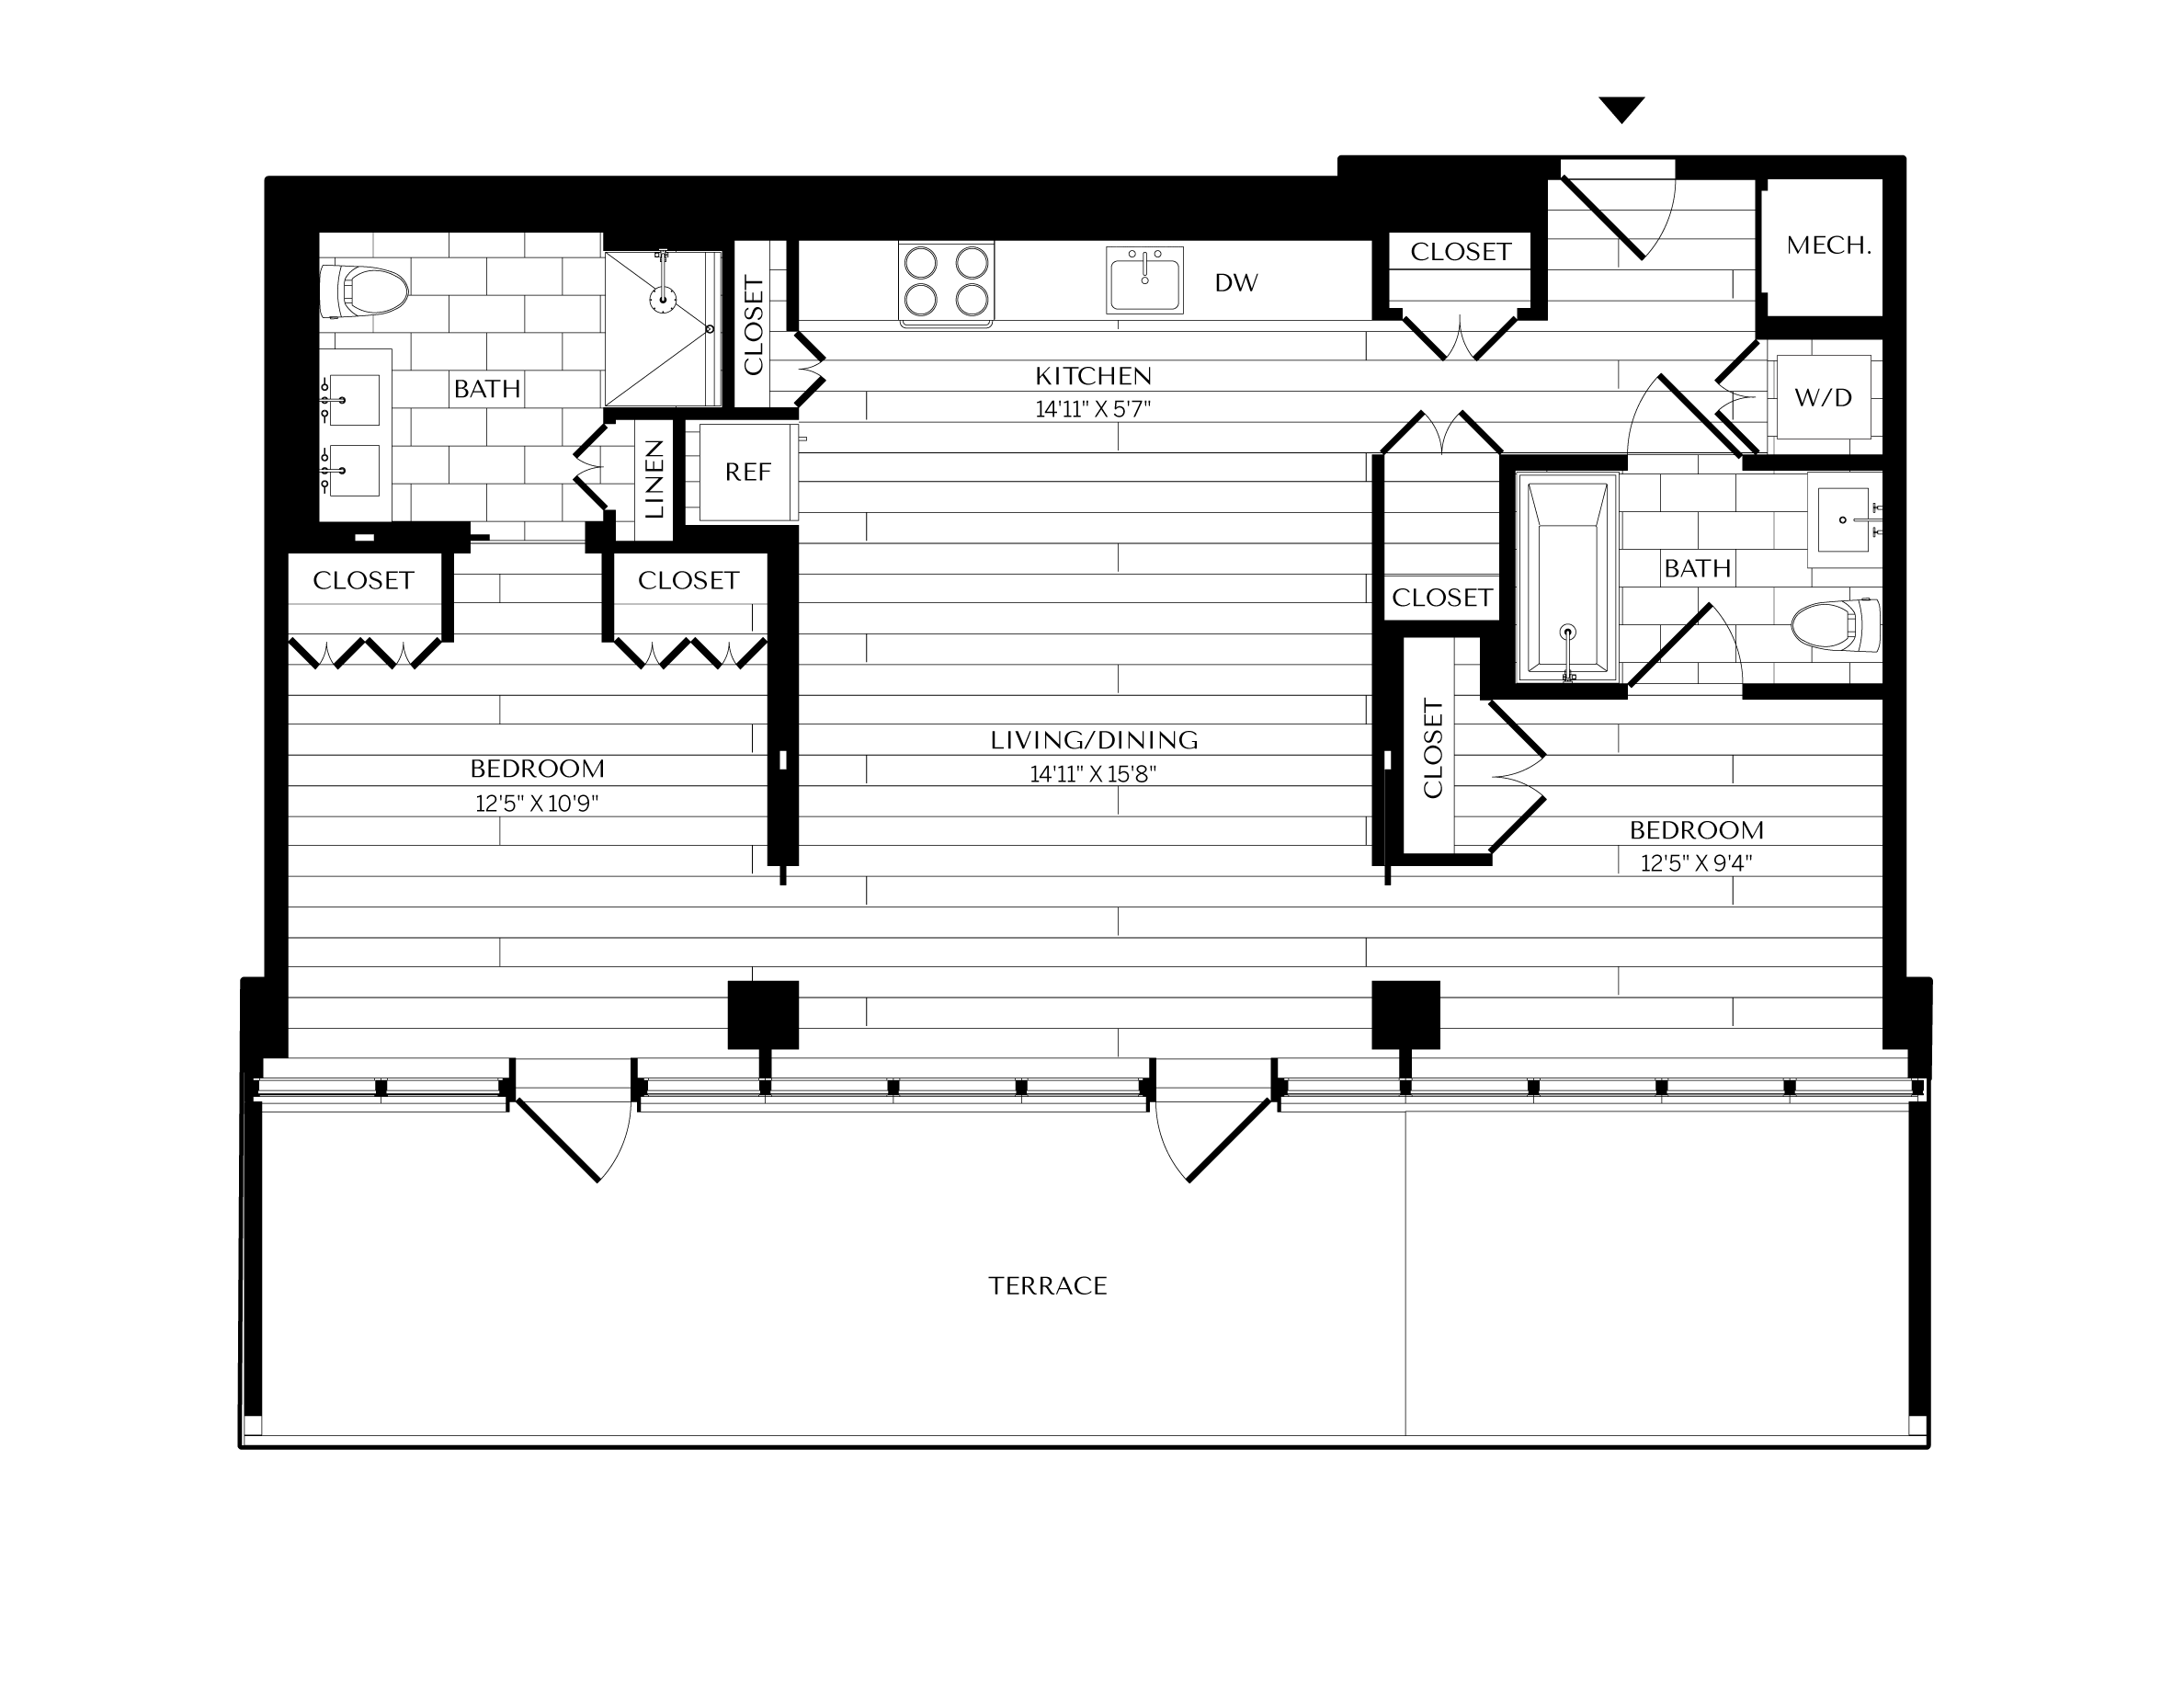 Floorplan image of unit 1202